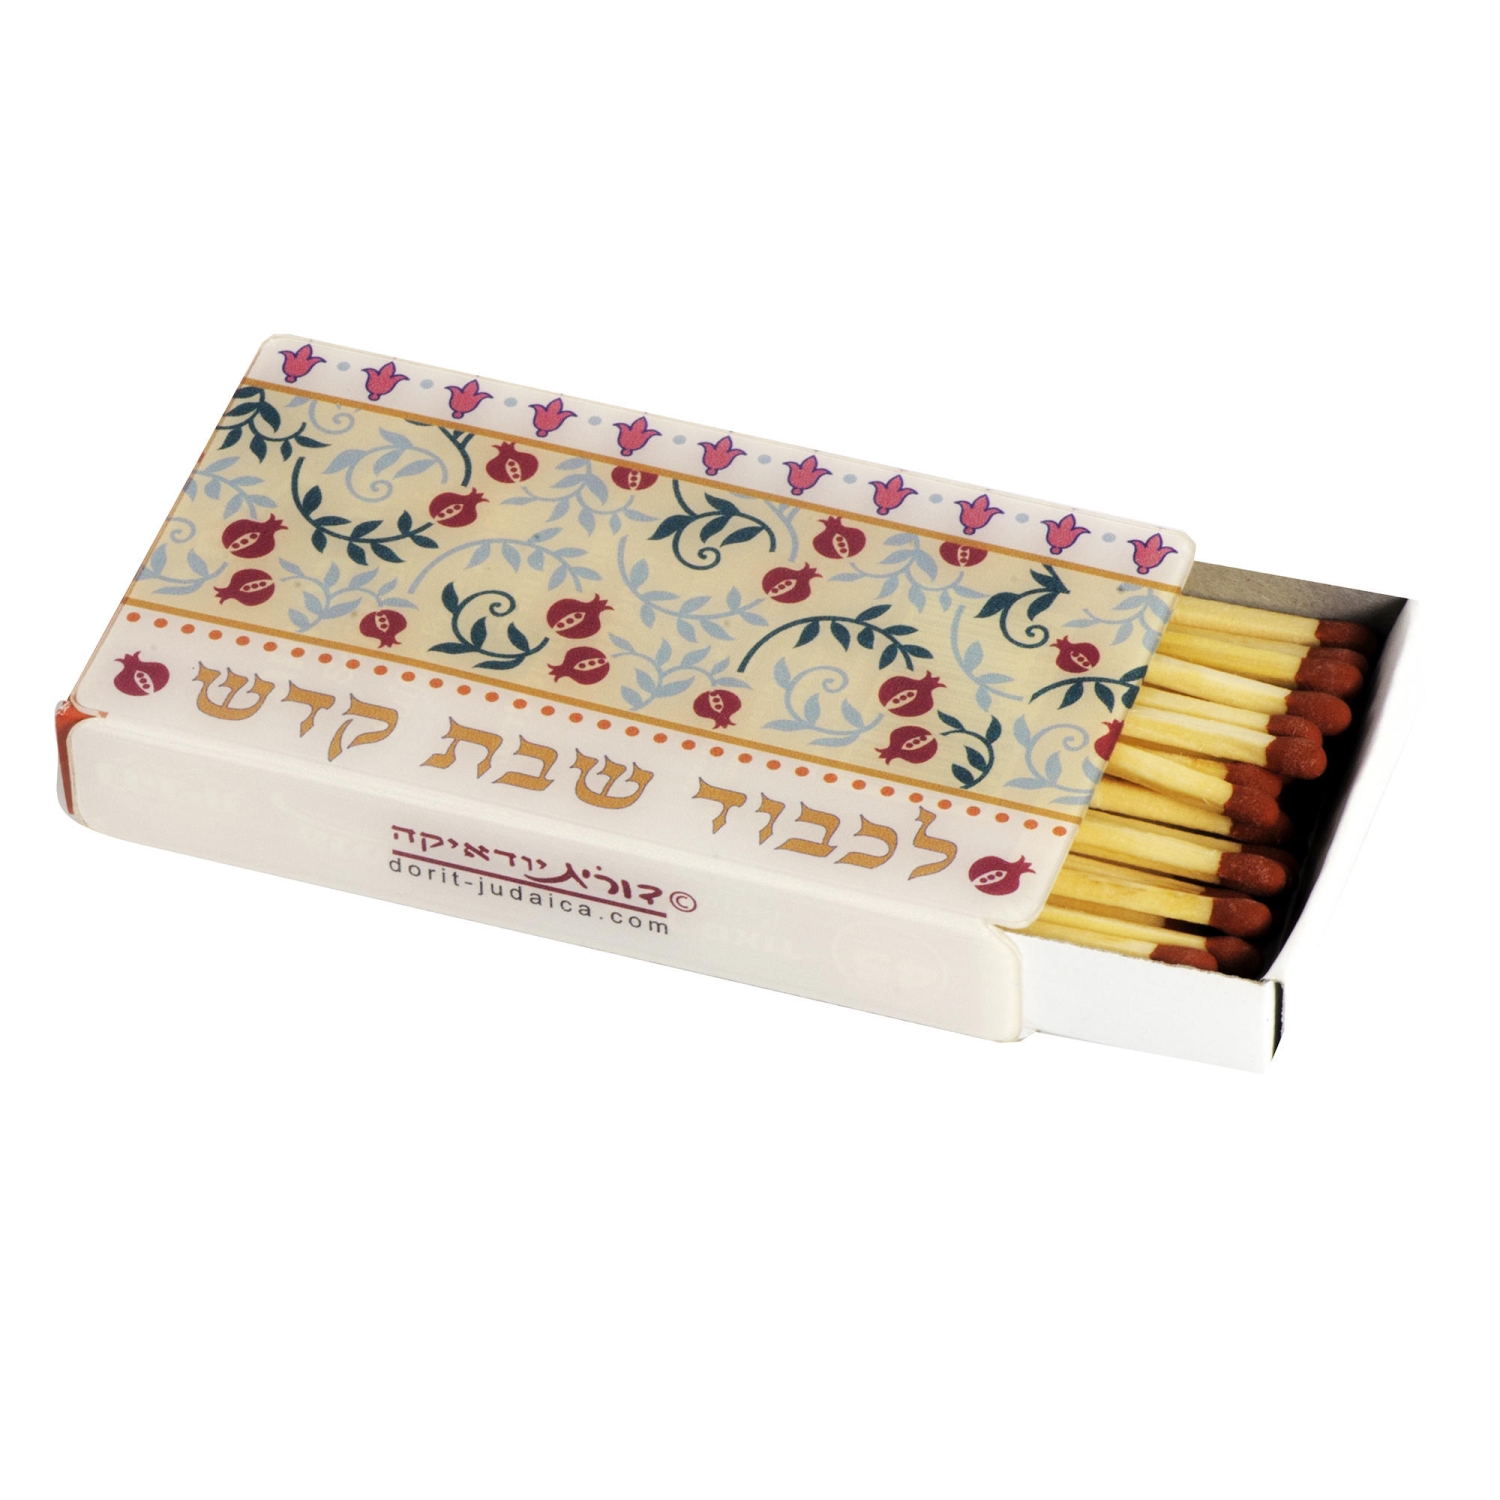 Dorit Judaica Perspex Matchbox Cover - Small Pomegranates - 1